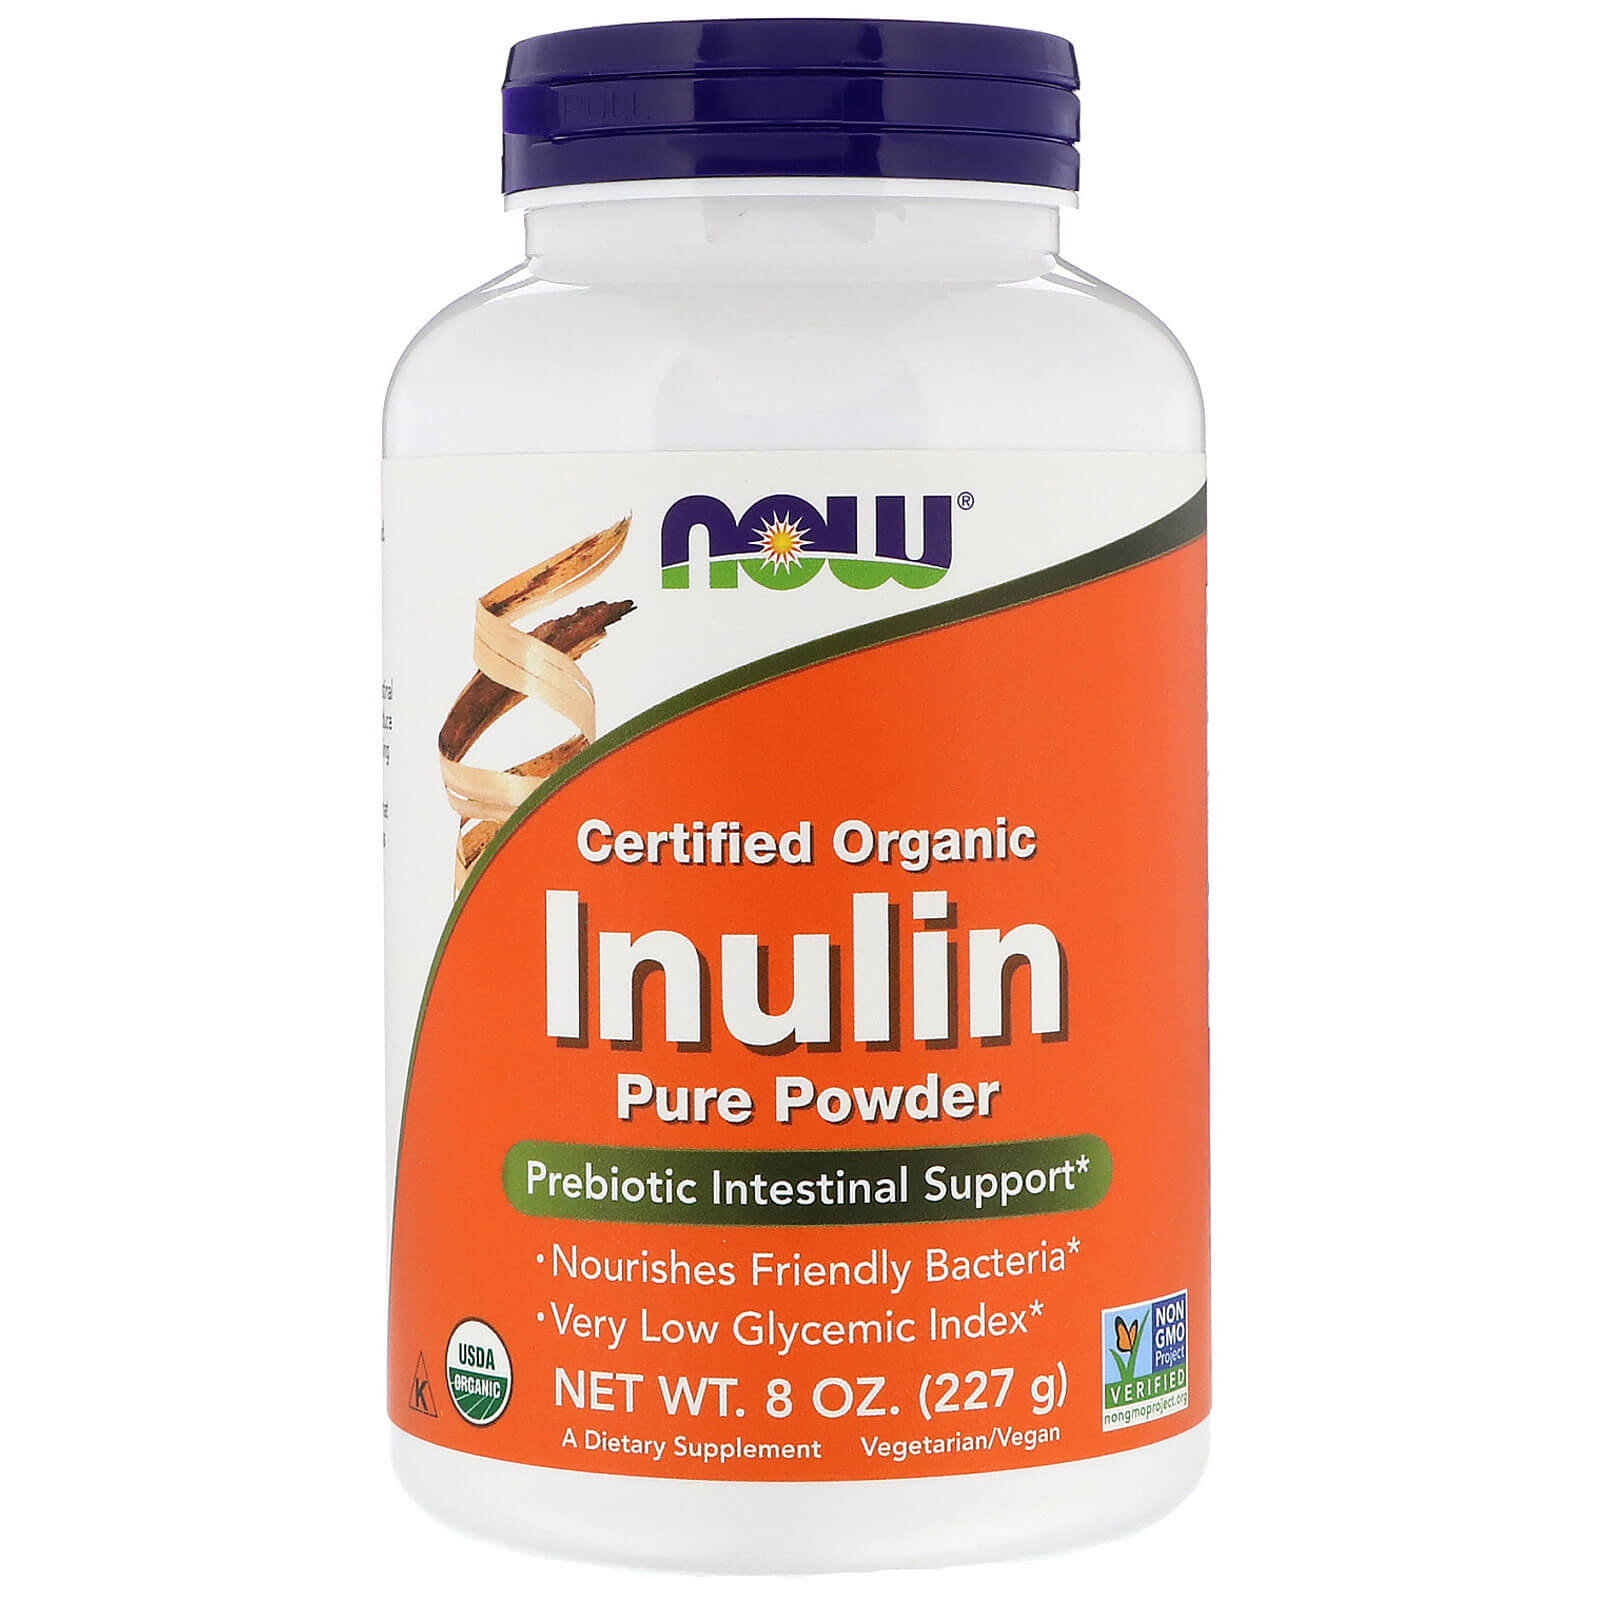 inulin